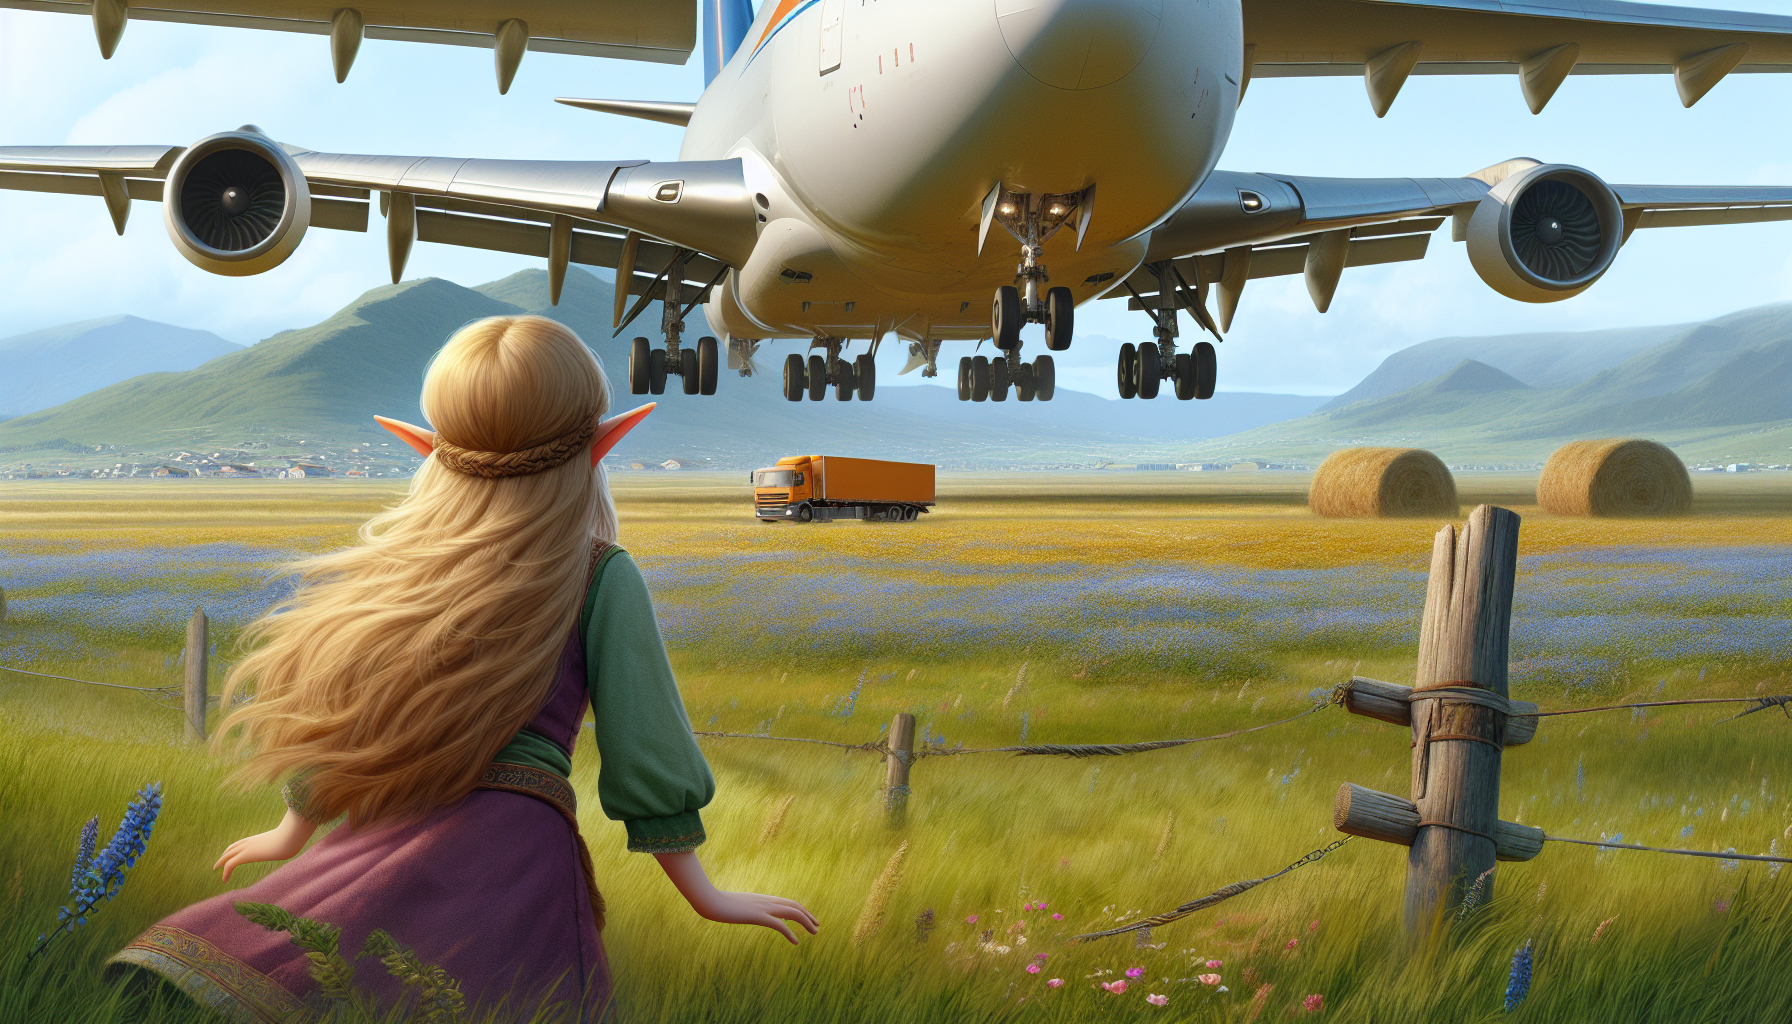 Seorang gadis elf melihat sebuah Pesawat kargo 747-8f melakukan pendaratan darurat disebuah padang rumput yang luas